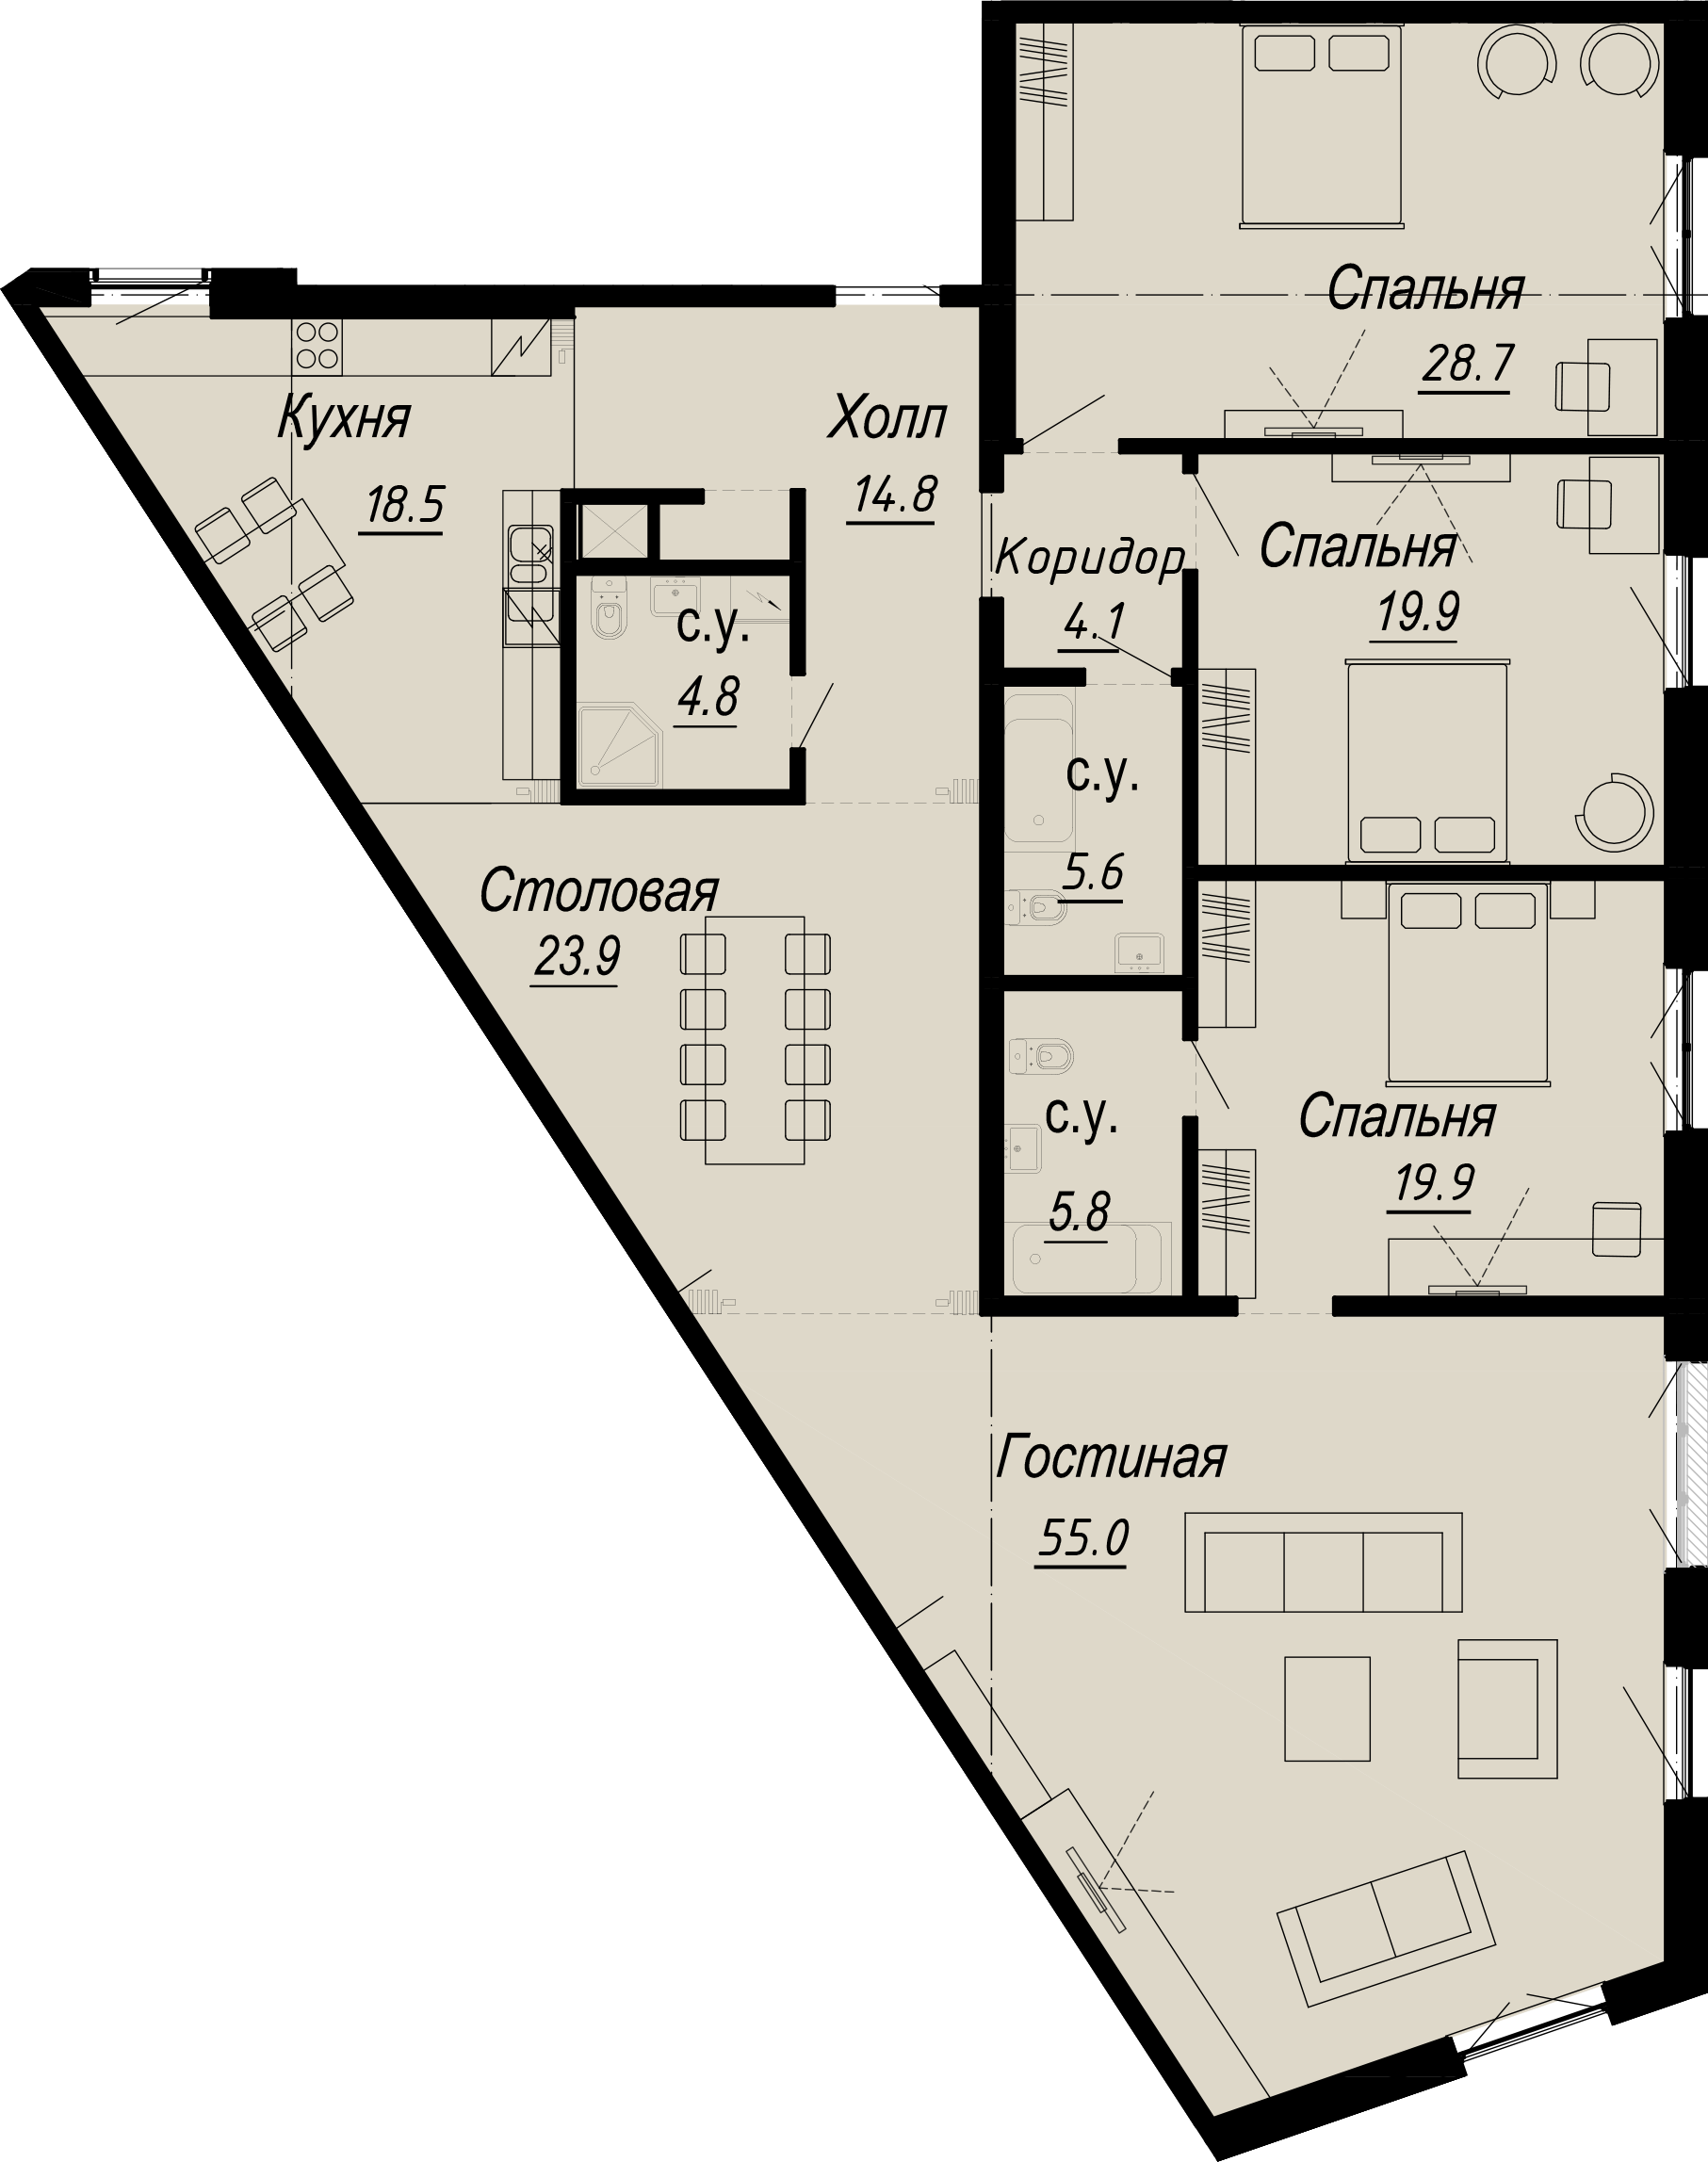 4-комнатная квартира  №7-3 в Meltzer Hall: 204.67 м², этаж 3 - купить в Санкт-Петербурге